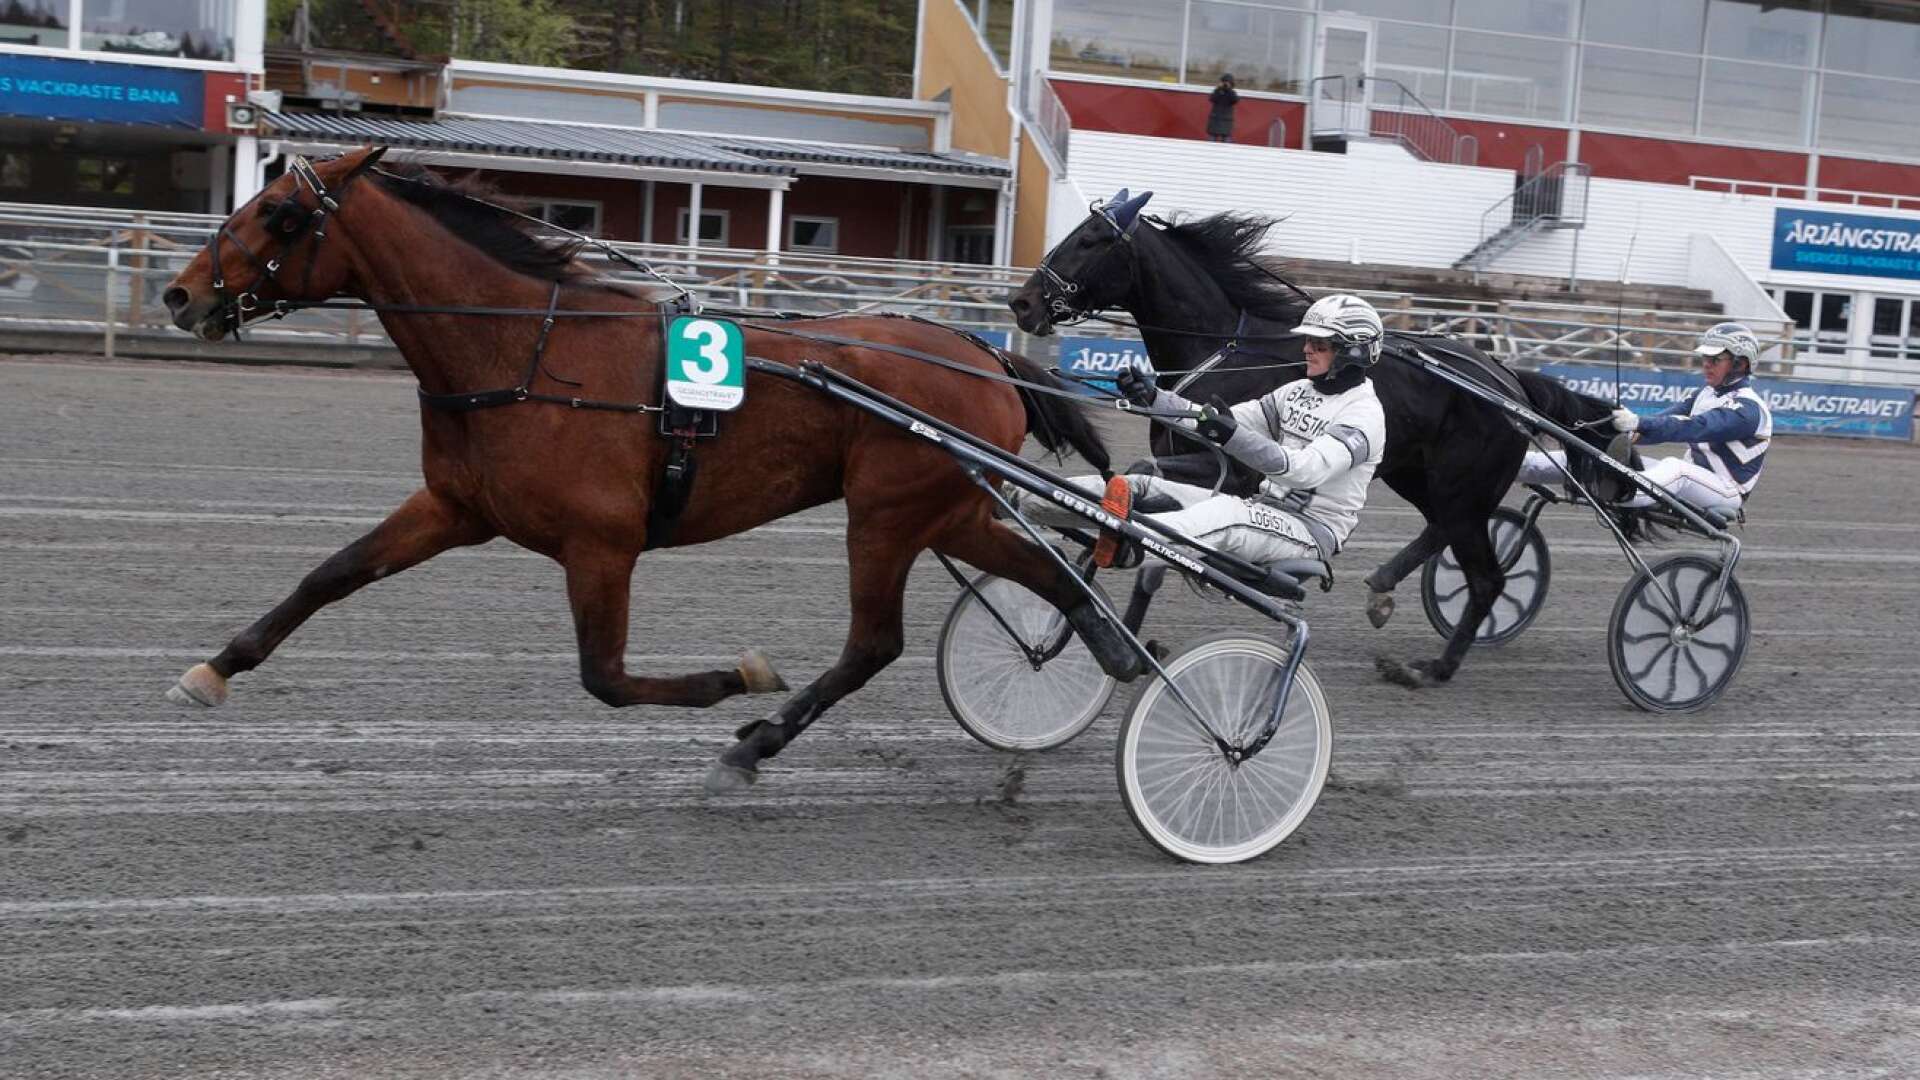 Uncle Töll vann GS75-1 före Millmighty. Det var en av tre vinster för André Eklundh i Årjäng under söndagen.